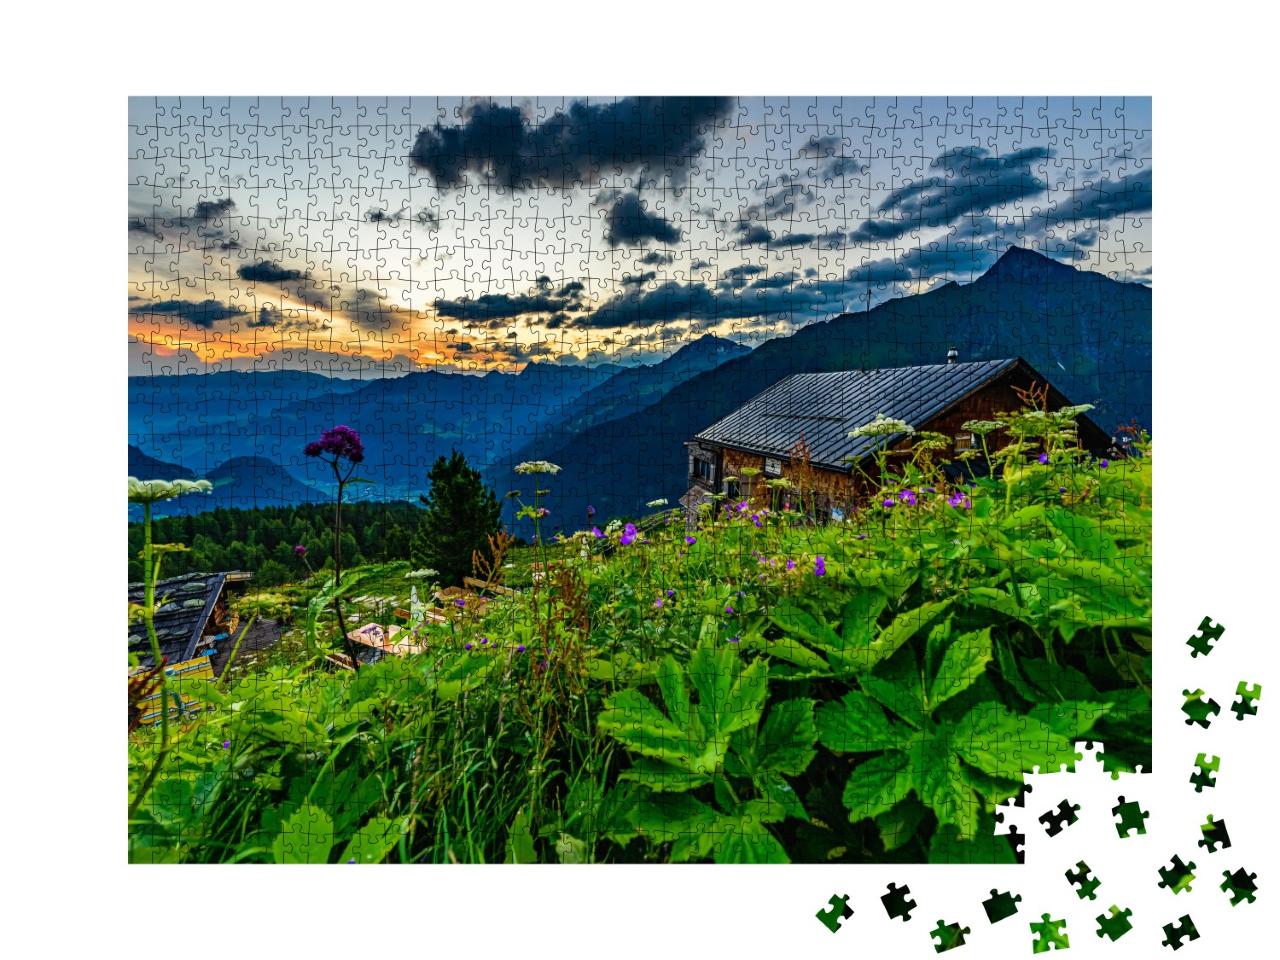 Puzzle de 1000 pièces « Lever de soleil sur la Gamshütte, Alpes de Zillertal »